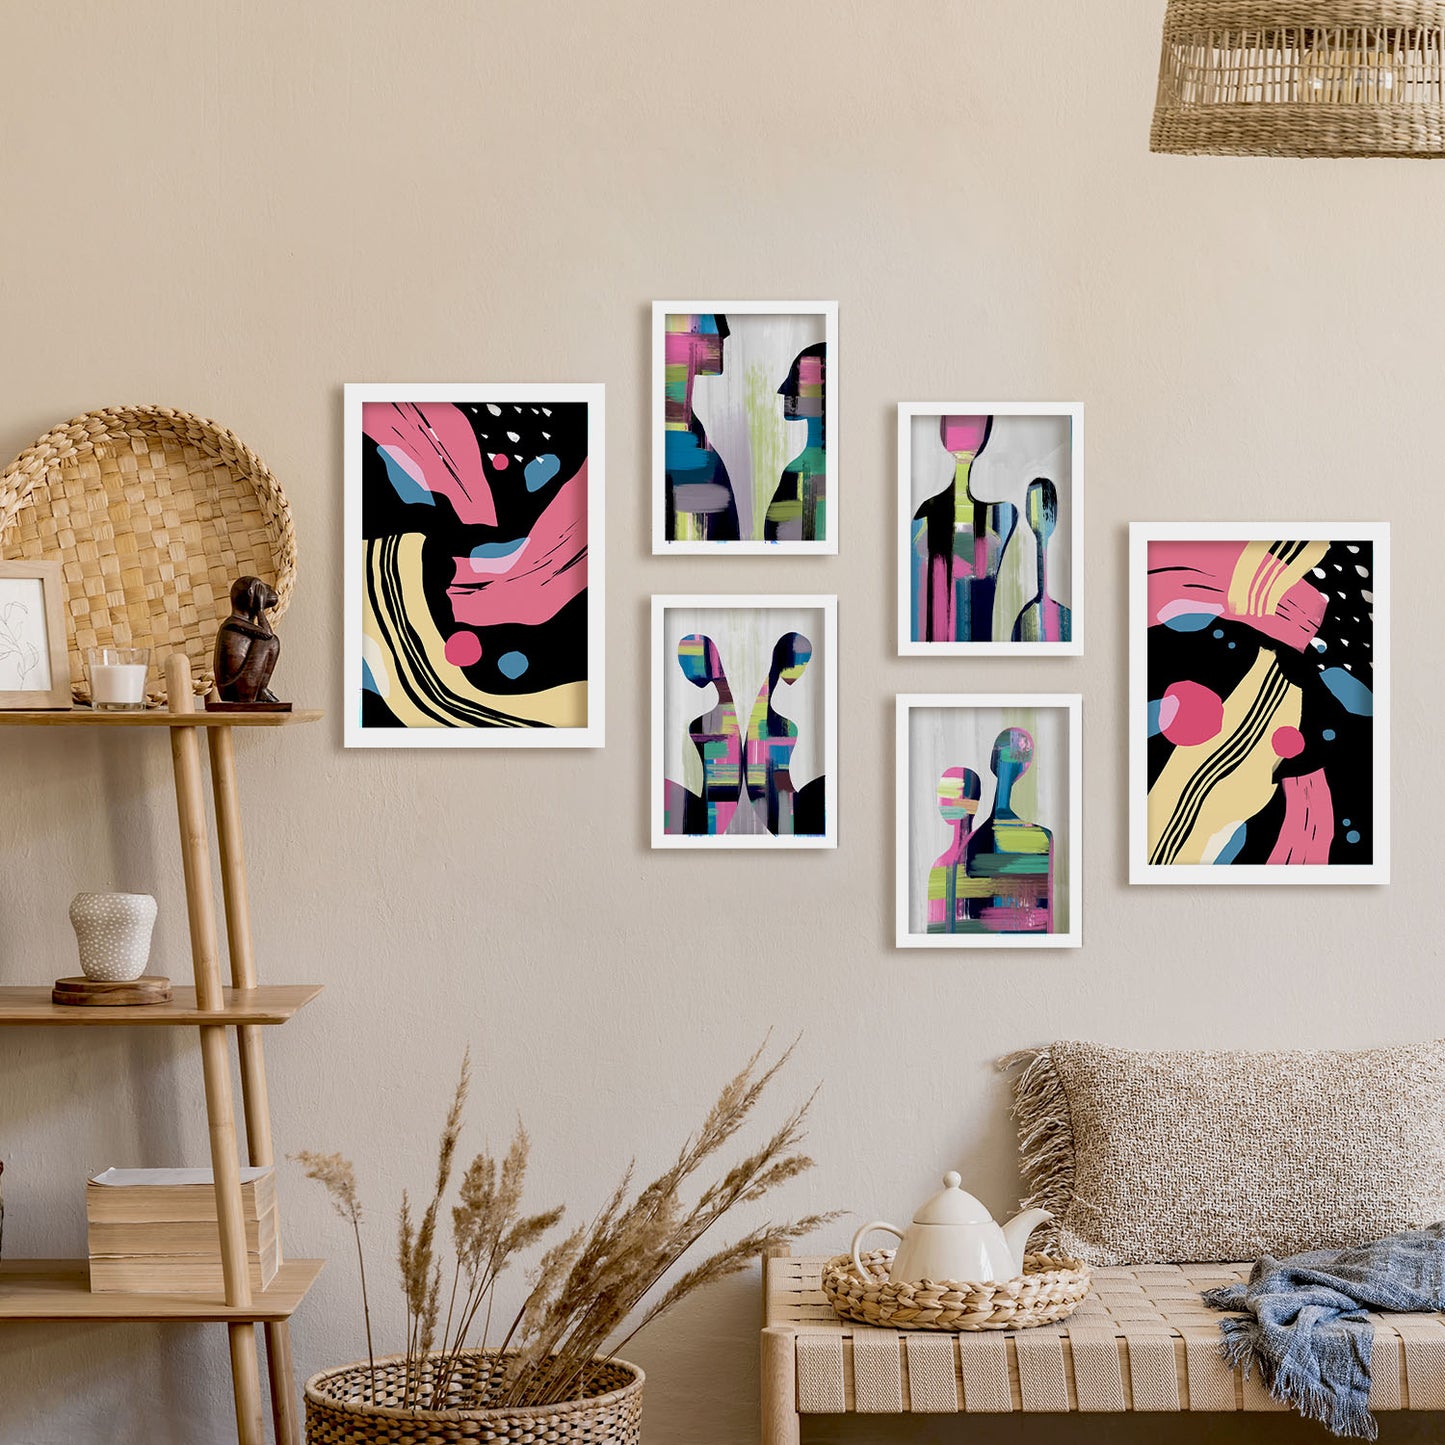 Nacnic Set de 6 Modos de comportamiento Posters. En Amantes abstracto. Estampados decorativos estéticos para su sala de estar, dormitorio, hogar Tamaños A4 y A3